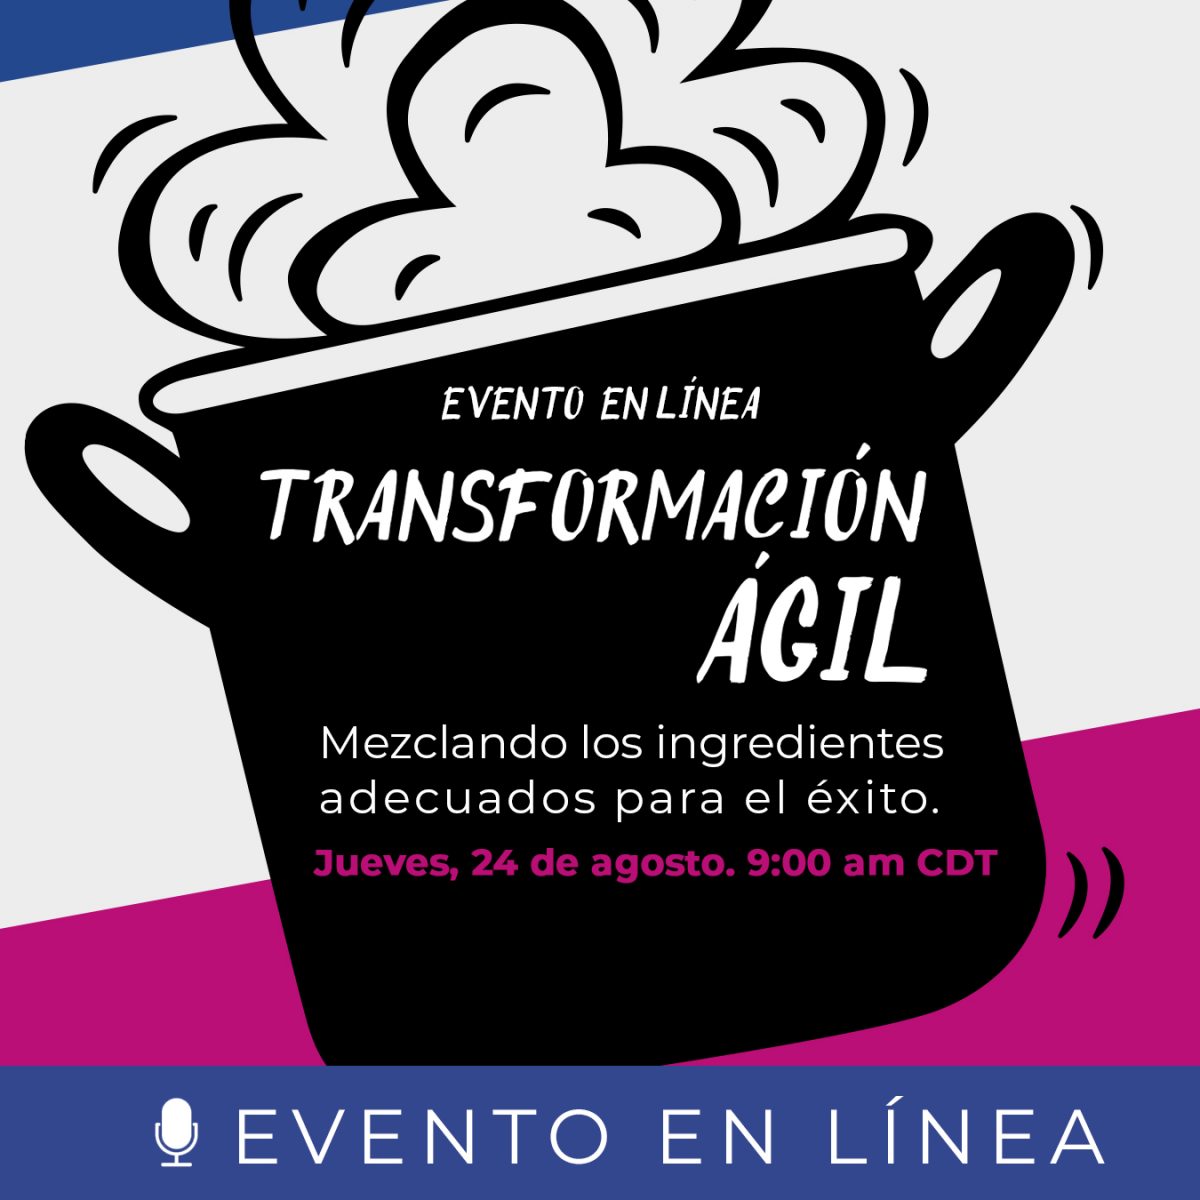 Transformación Ágil: Mezclando los ingredientes adecuados para el éxito